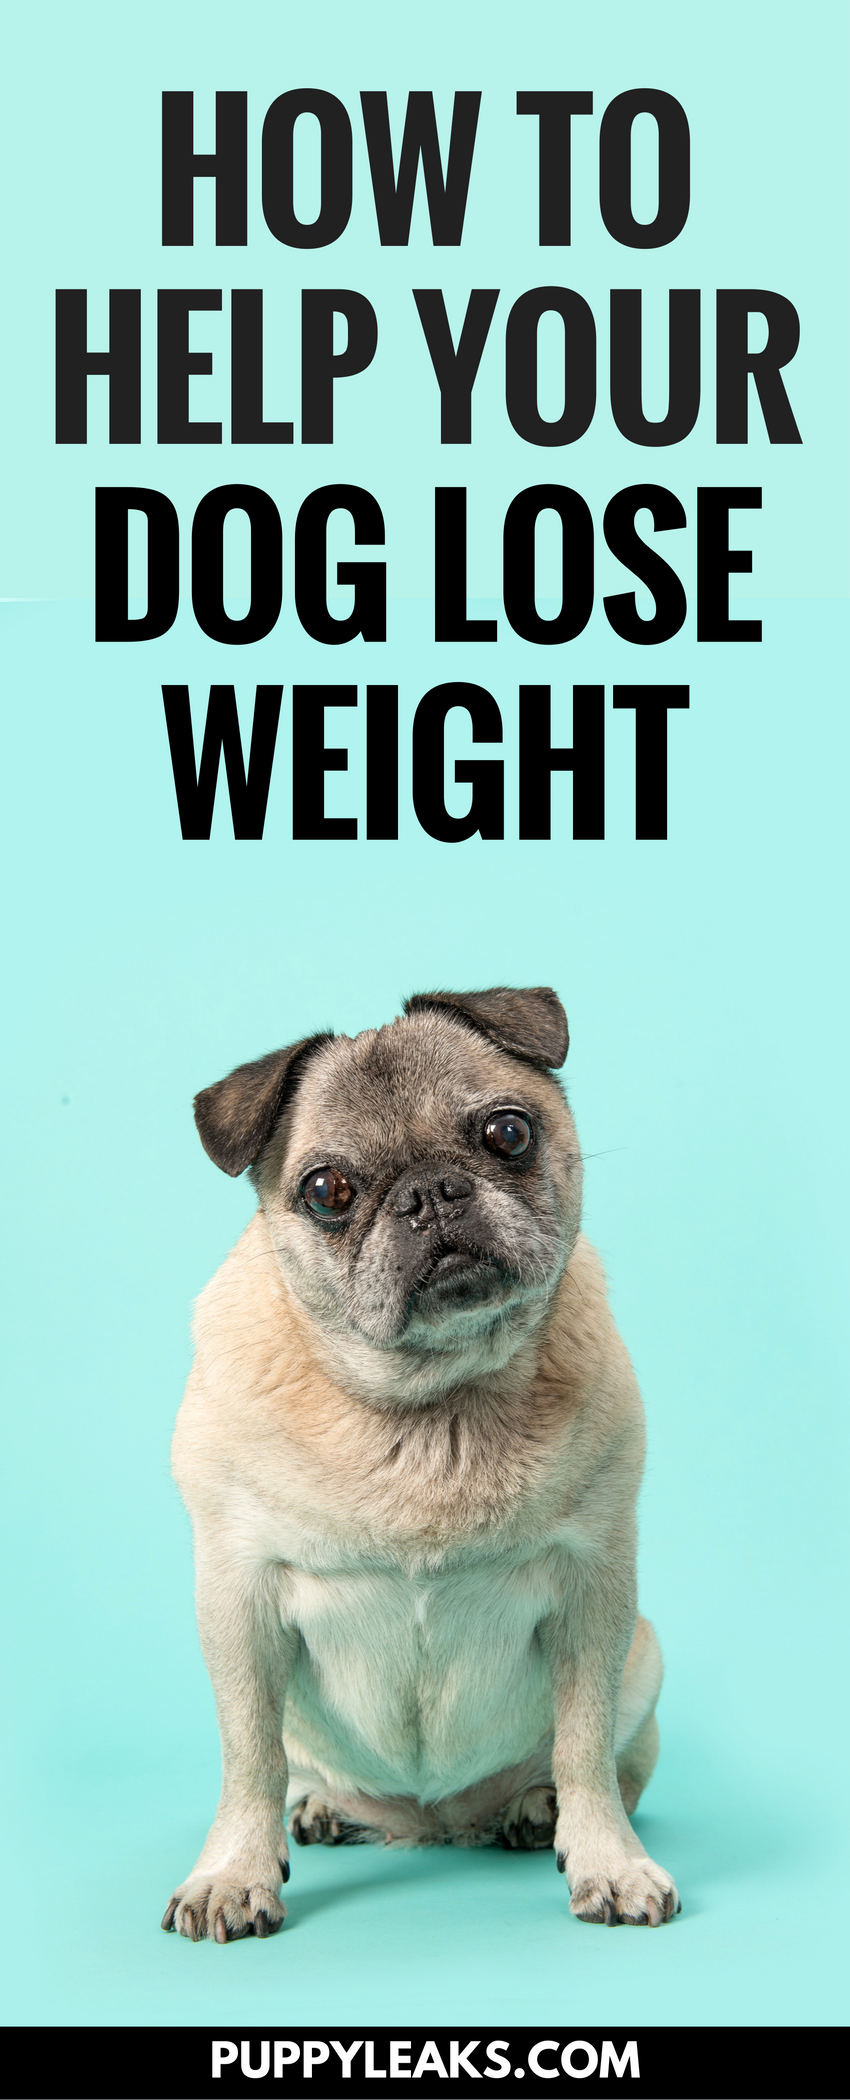 5 conseils pour aider votre chien à perdre du poids